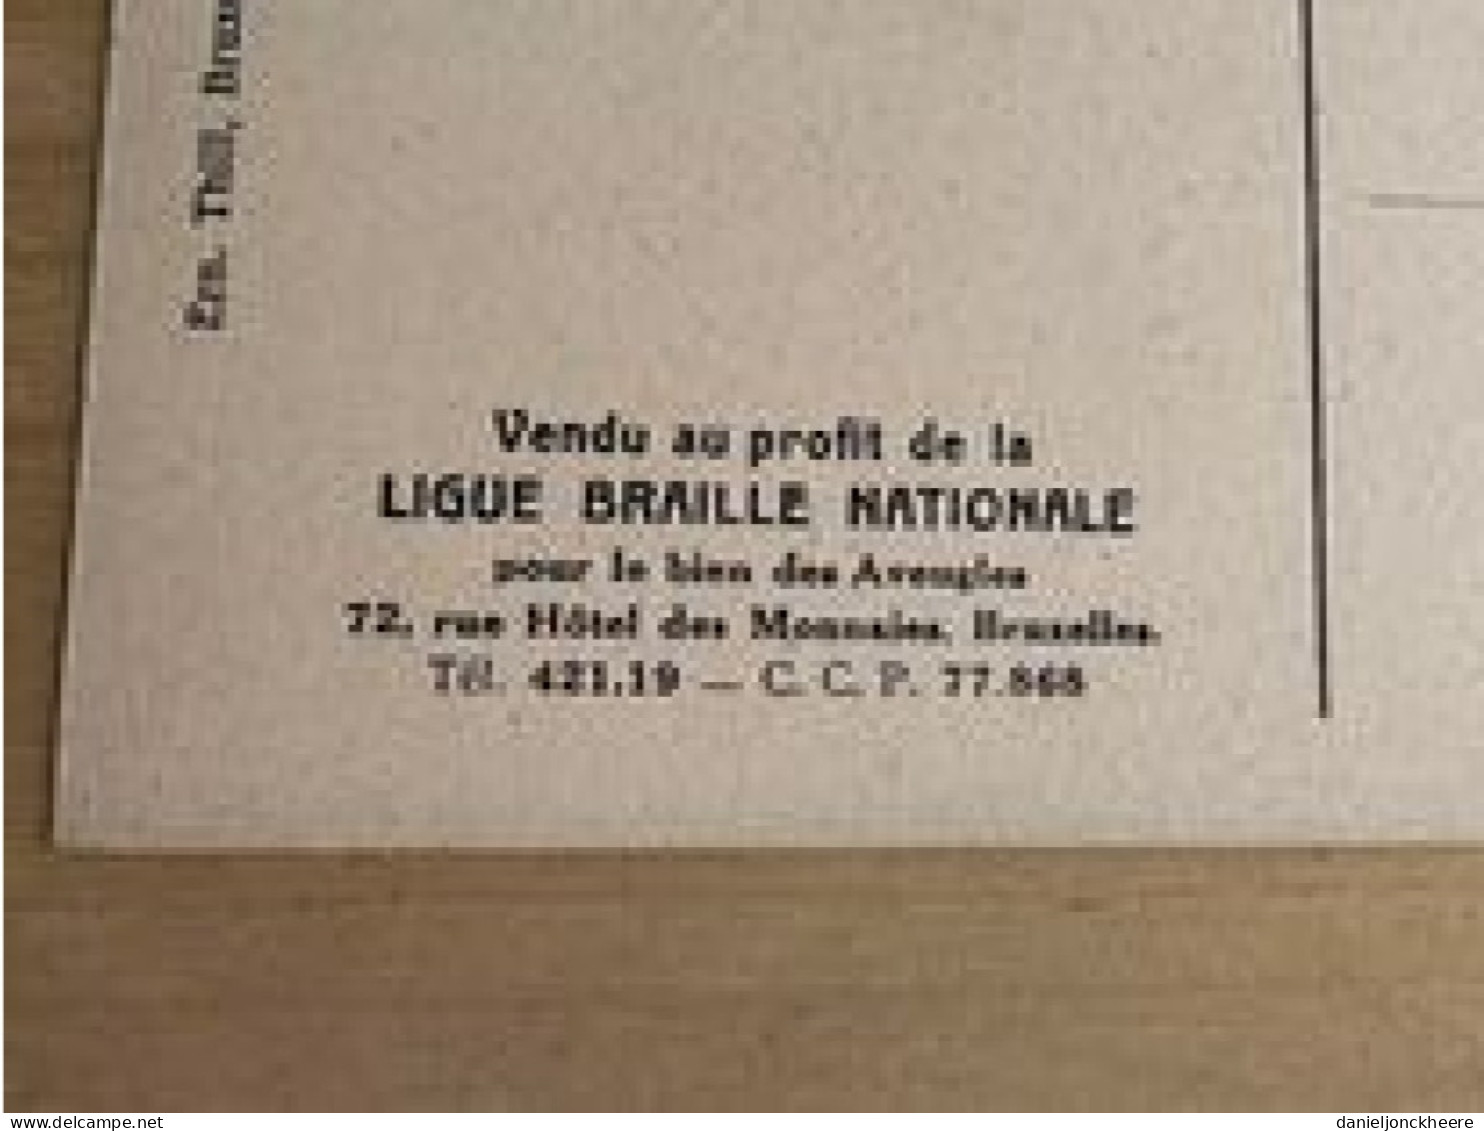 Carte Postale Postkaart Postcard Portrait Du Senateur X Par Cecile Douard Mons 1897 Ligue Braille Nationale - Politieke En Militaire Mannen